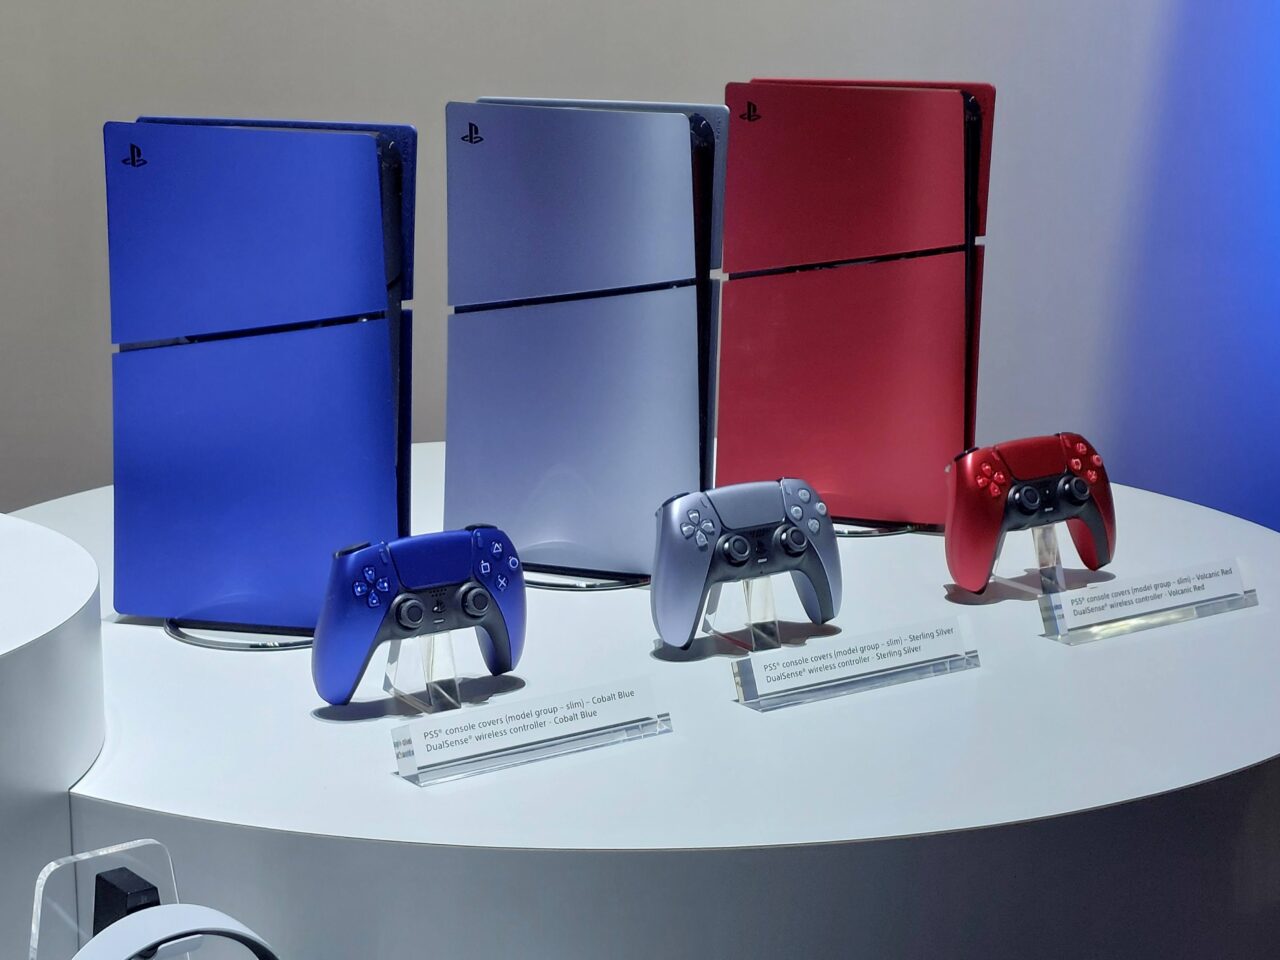 Konsola do gier PS5 w różnych kolorach (błękitna, srebrna, czarna, czerwona) i pasujące do nich kontrolery bezprzewodowe, wystawione na białym stoliku wystawienniczym.